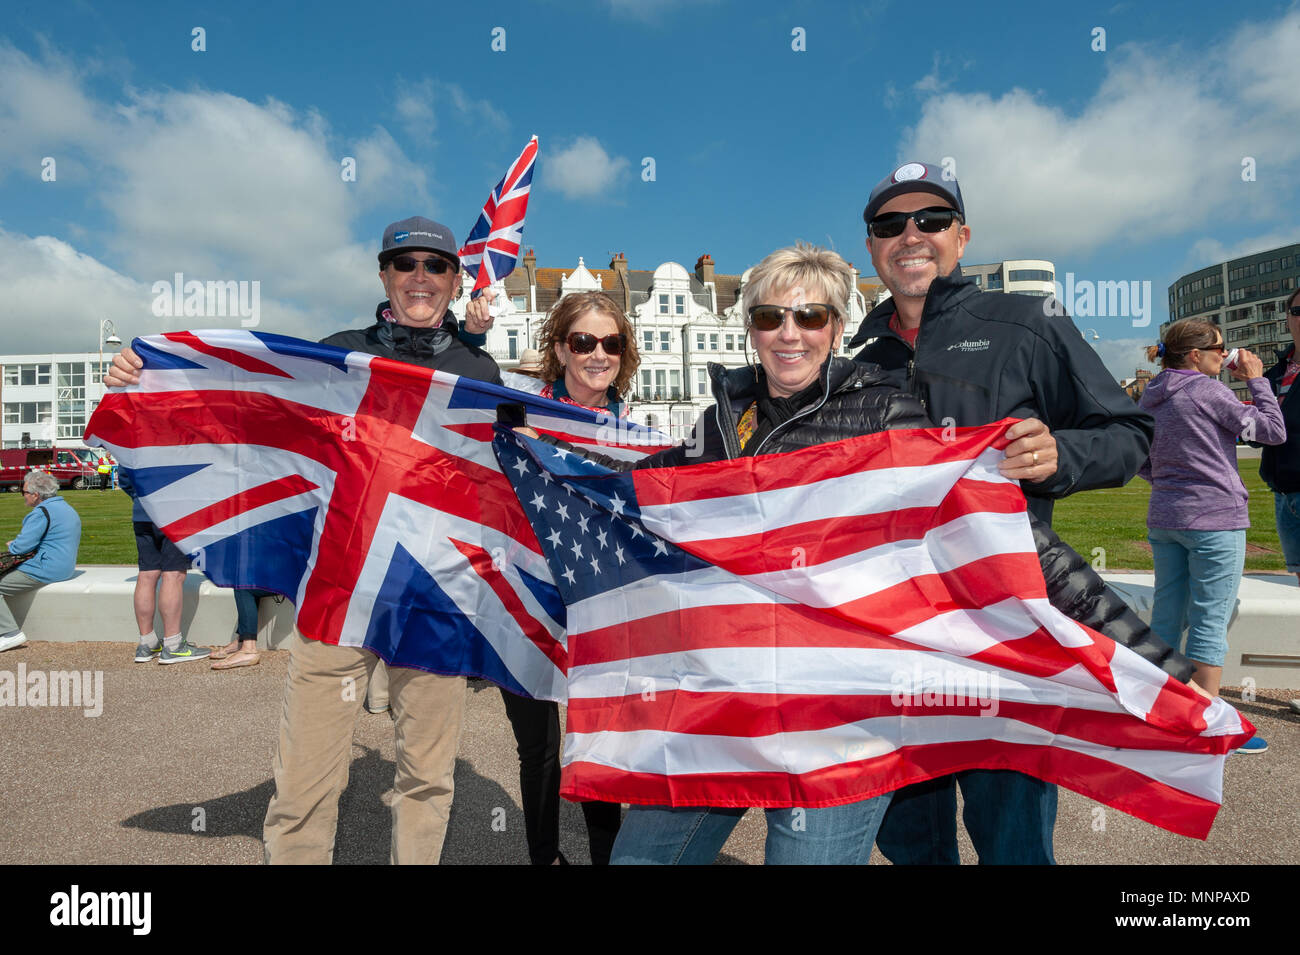 Les touristes américains détiennent un drapeau Union Jack et le drapeau des États-Unis d'Amérique alors qu'ils célèbrent le prince Harry et Meghan Markle's mariage à un événement de mariage royal sur le front de mer de Hastings sur Mer, East Sussex, UK, en Angleterre. Banque D'Images